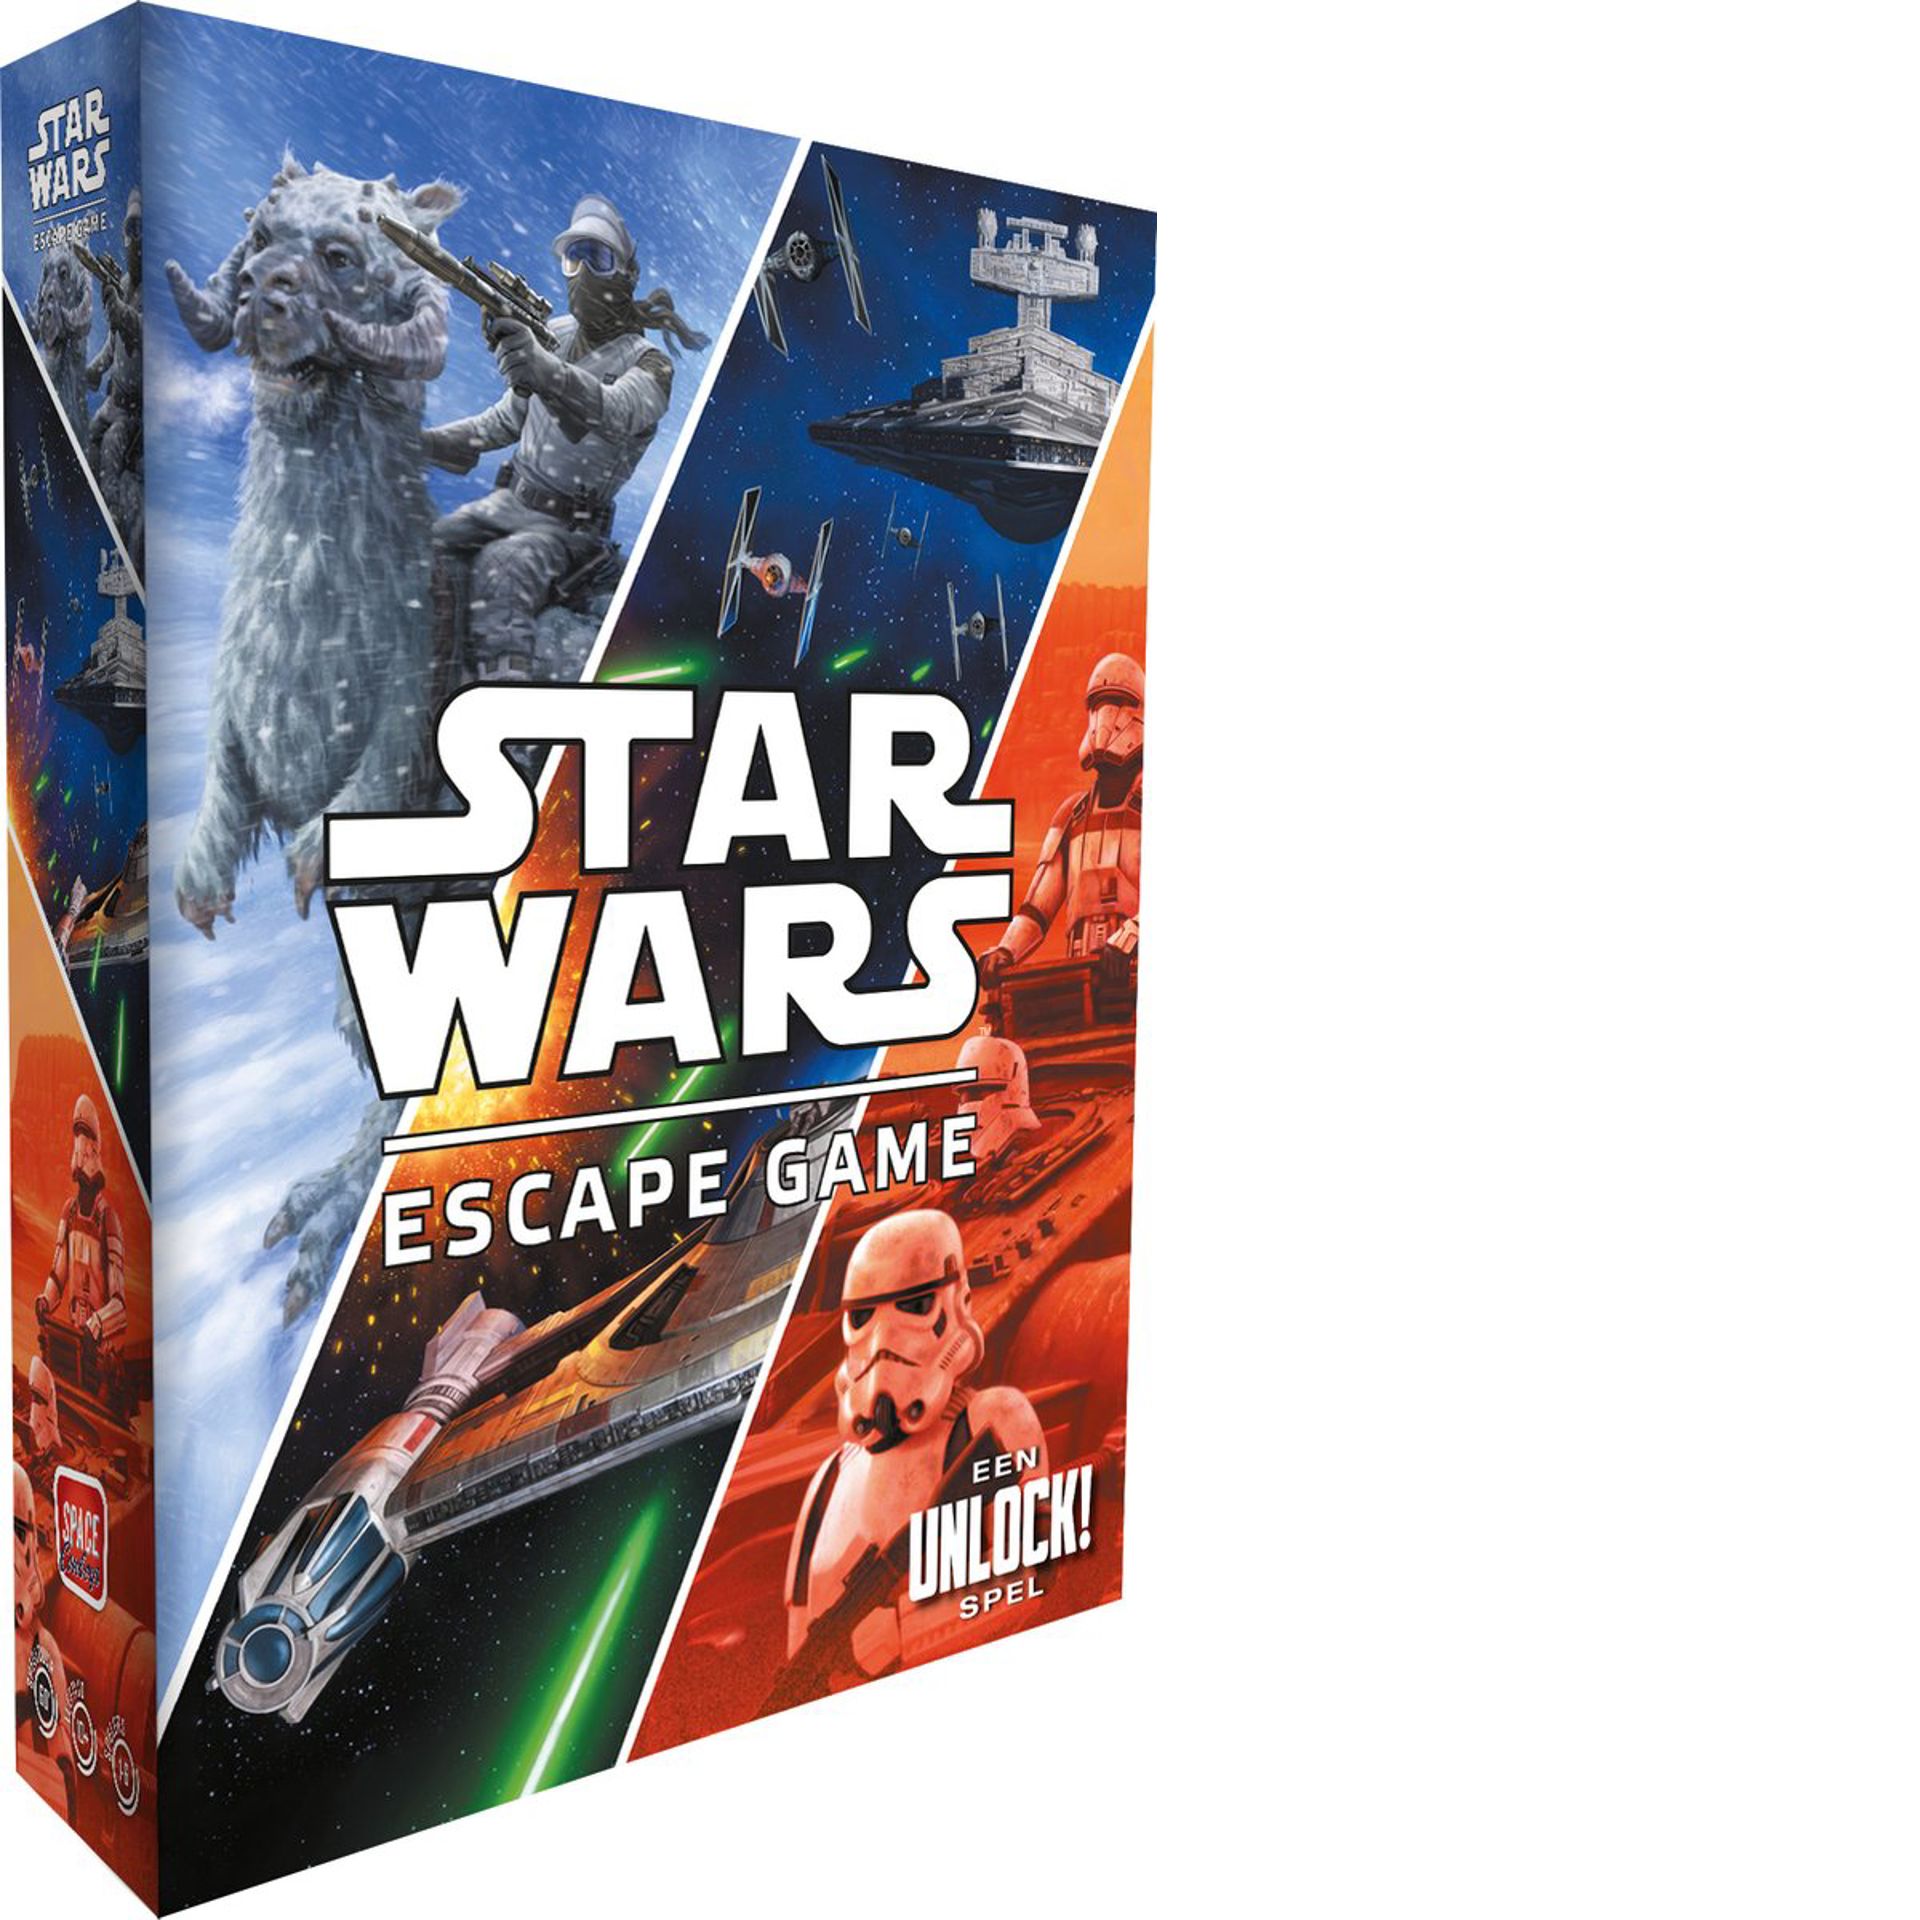 Star Wars: Escape Game - Een Unlock! Spel NL